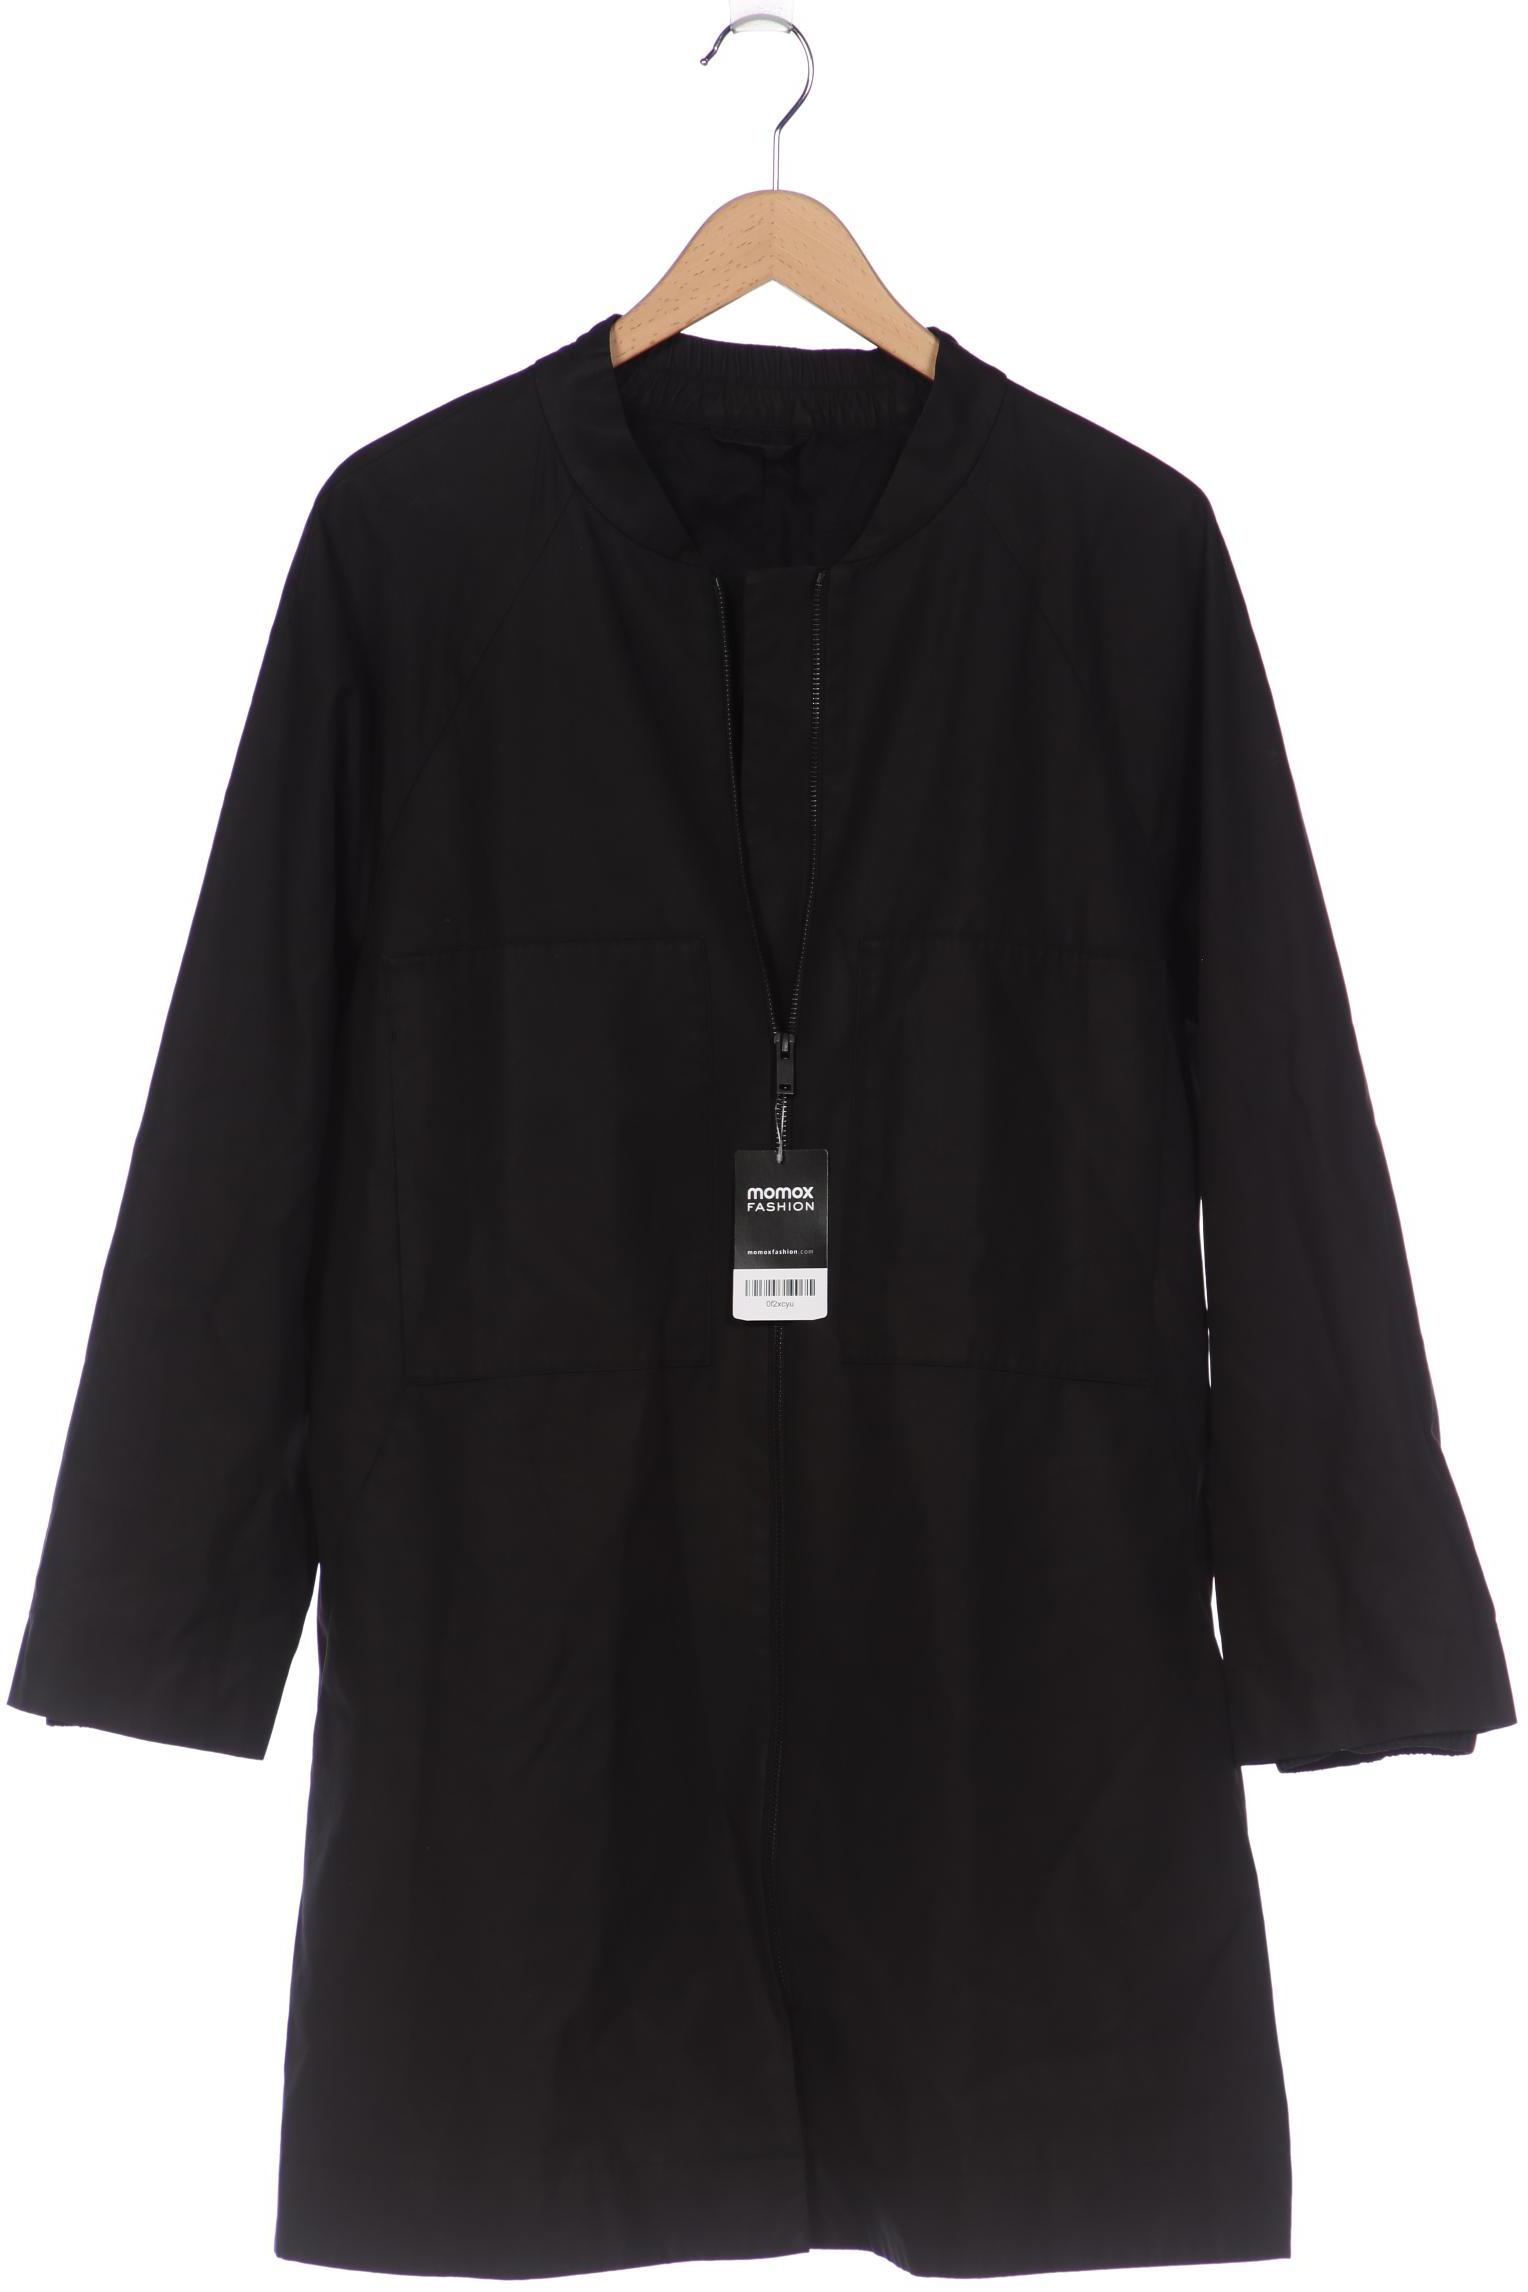 COS Damen Mantel, schwarz, Gr. 44 von COS